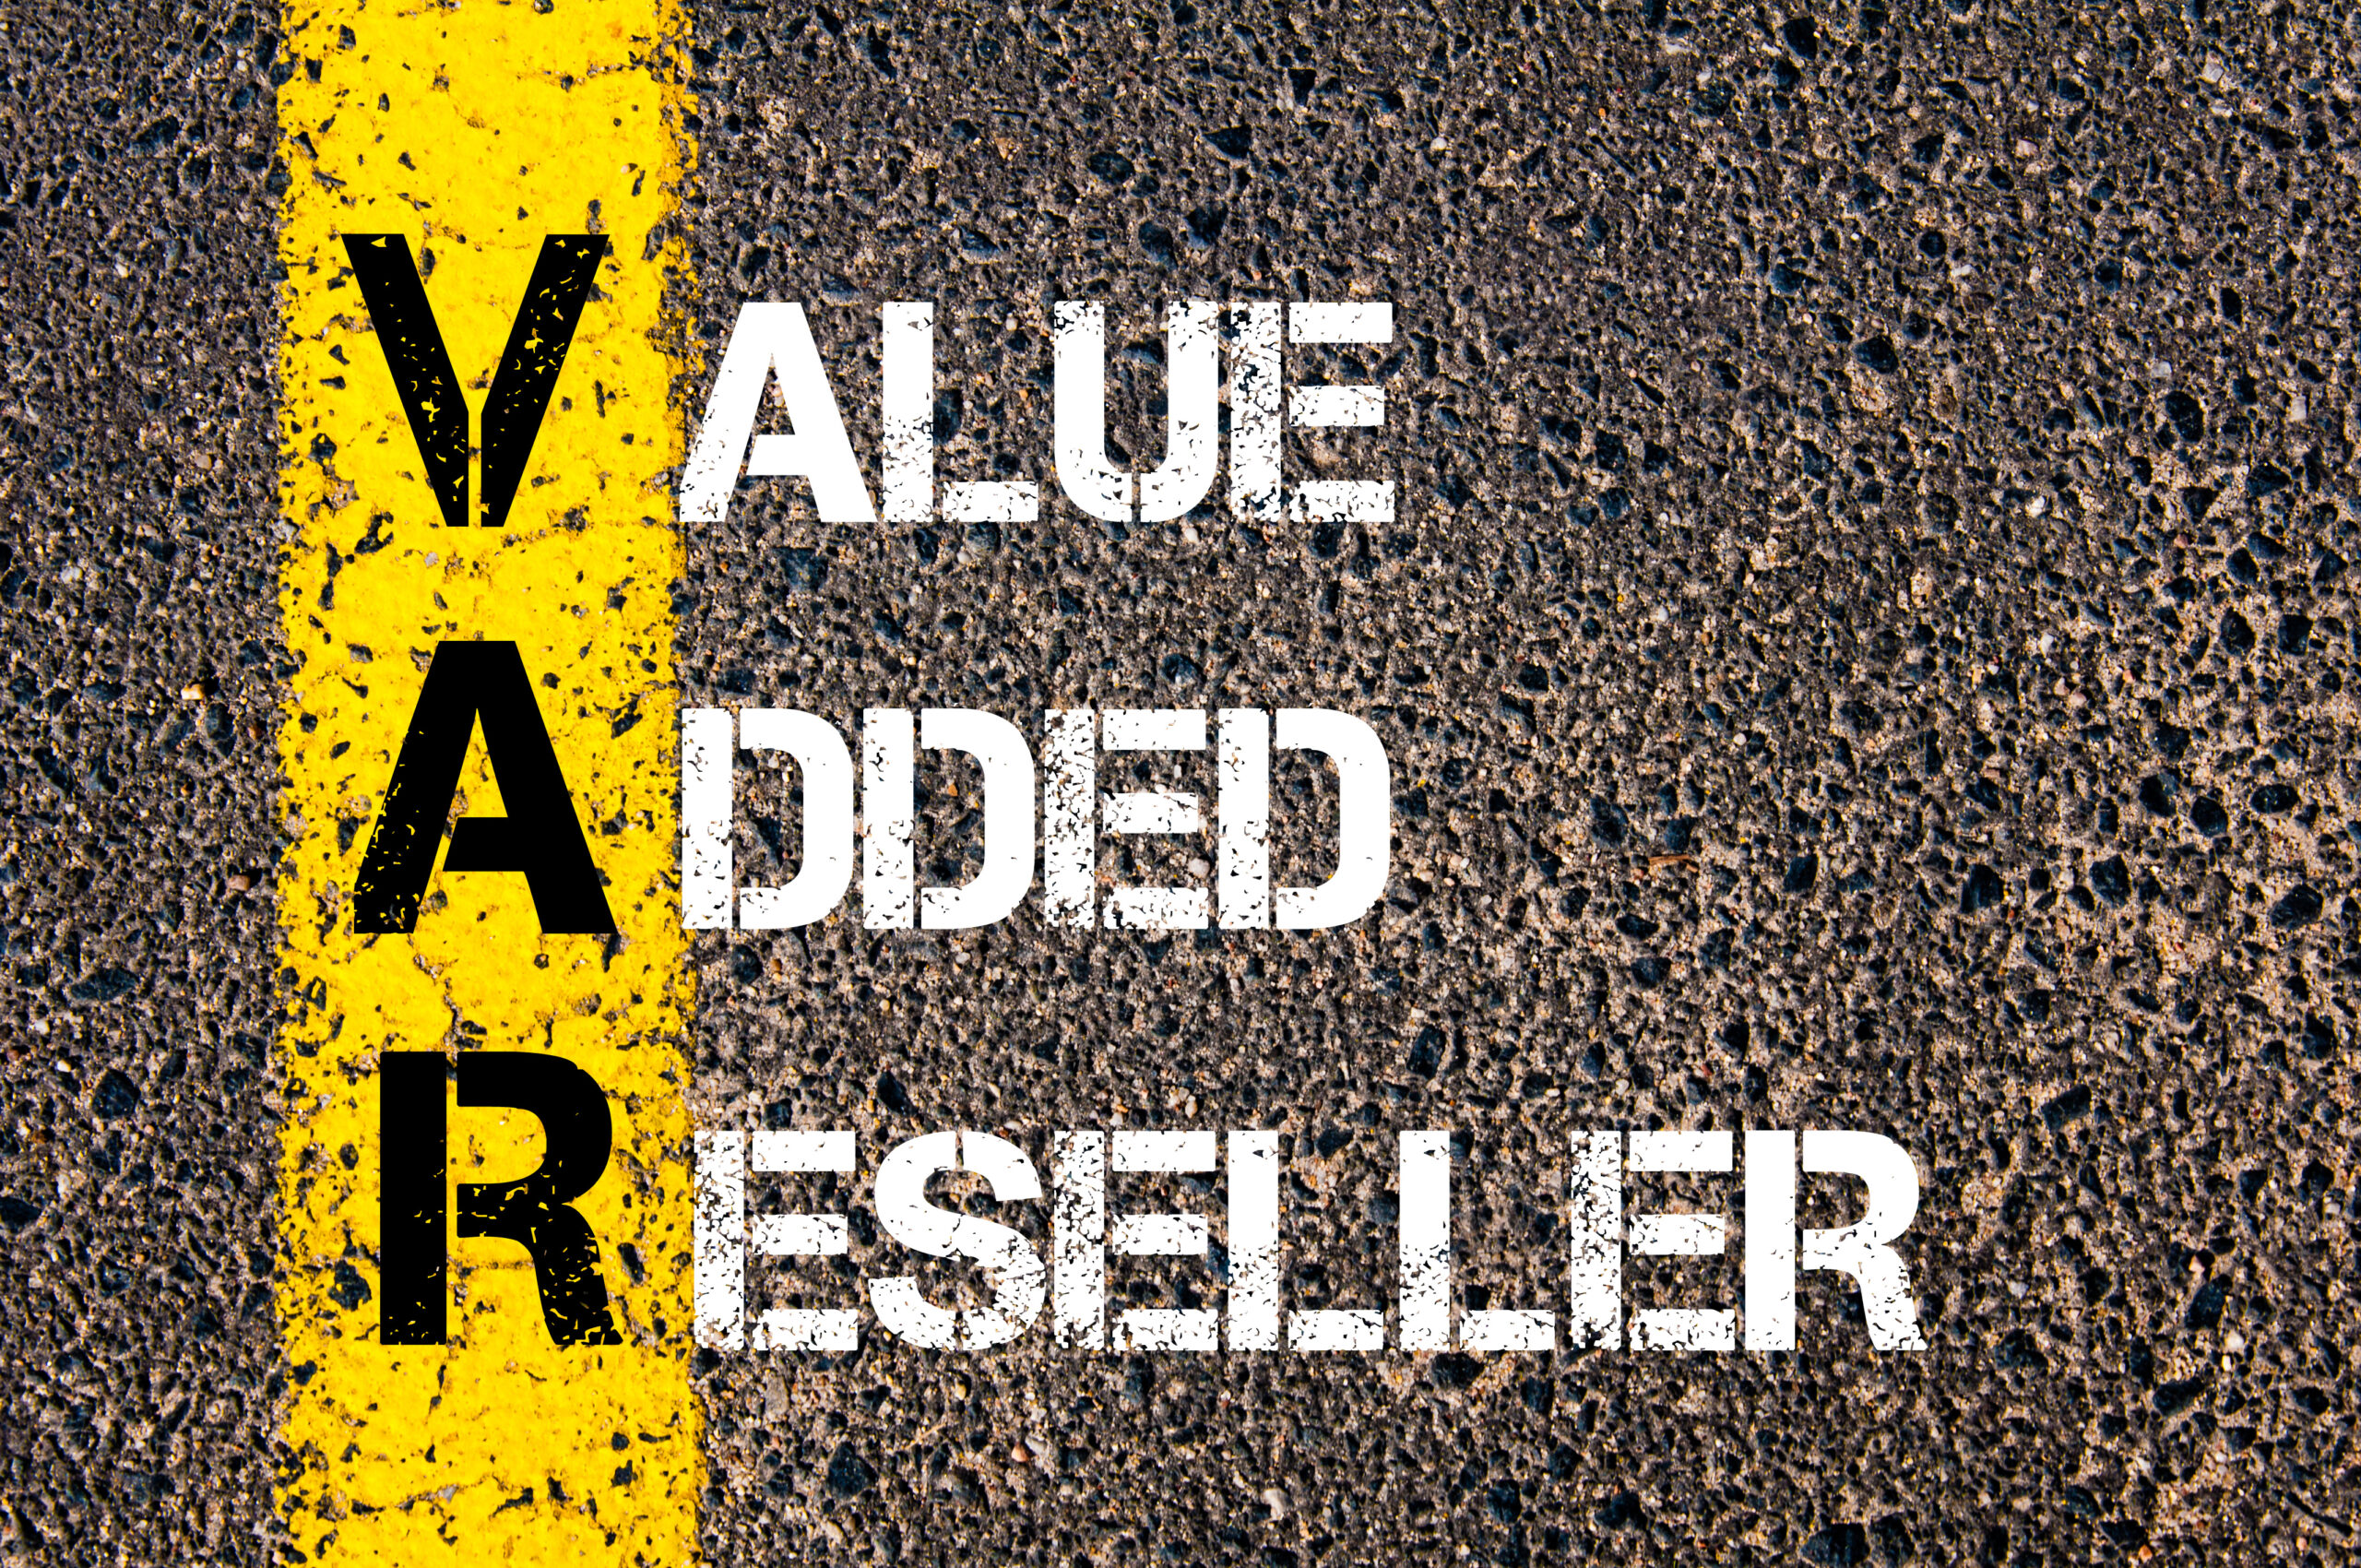 VAR-Value-Added-Reseller-Painted-on-Asphalt-Road-Surface